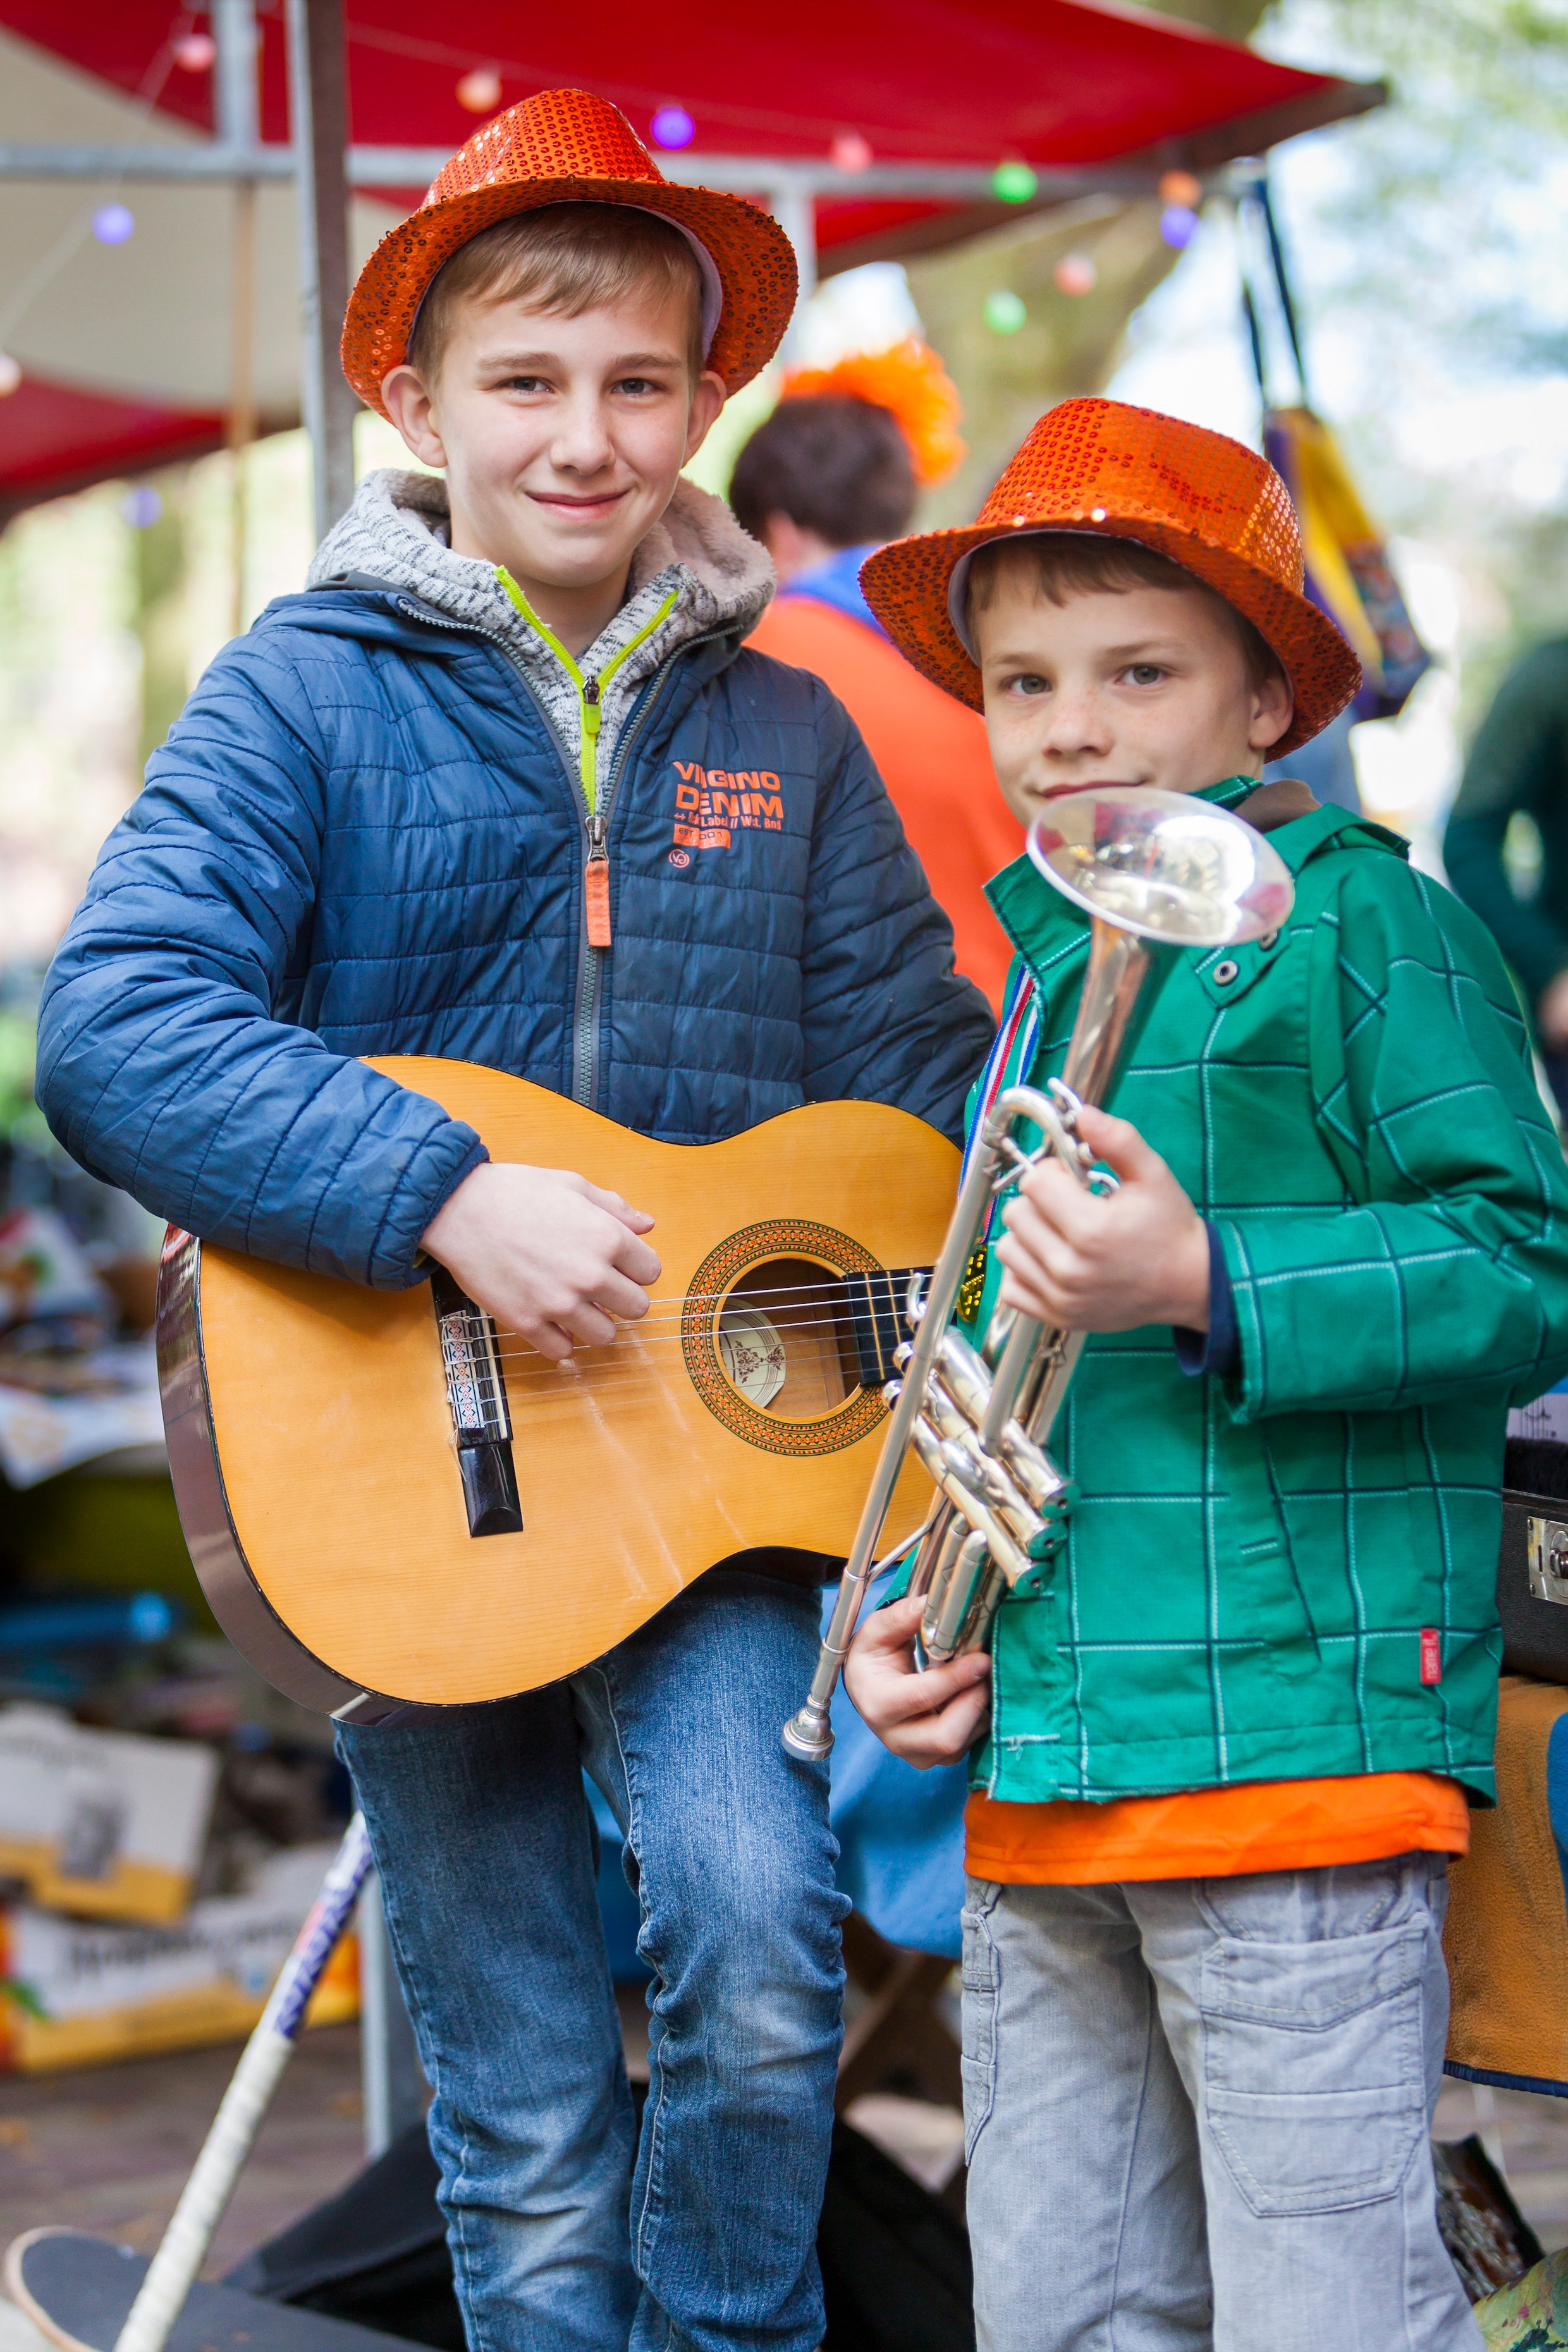 Noud Crijns (12) en zijn broer Krijn (9) spelen gitaar (Noud) en verkopen wafels (Krijn).